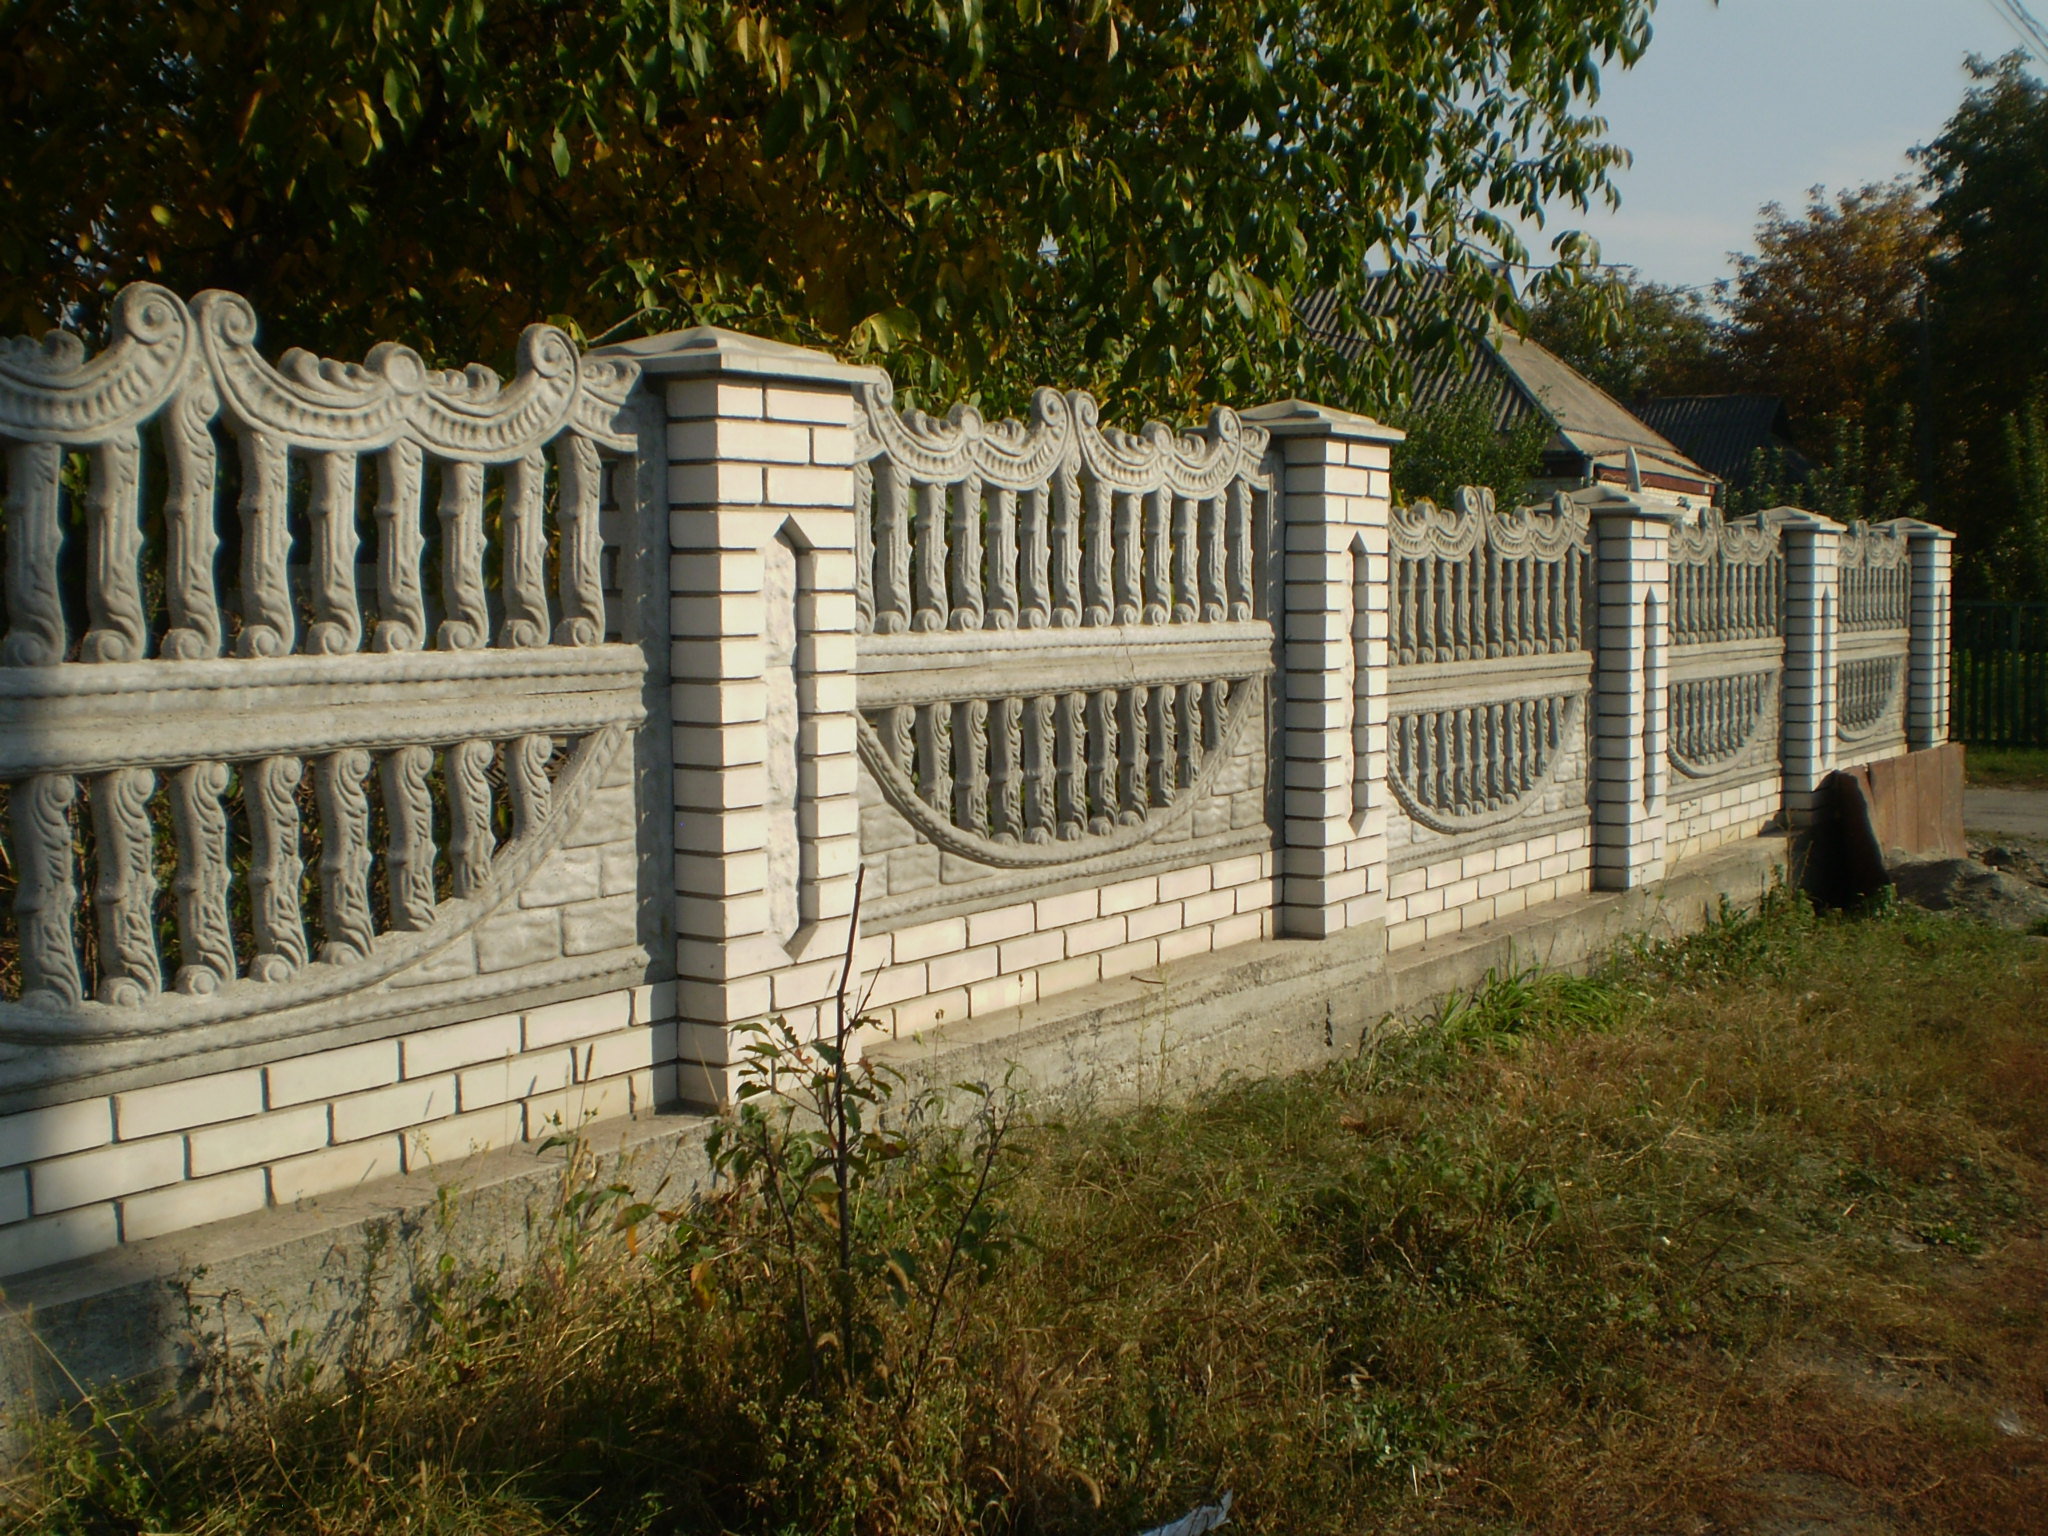 Забор: основные виды конструкций